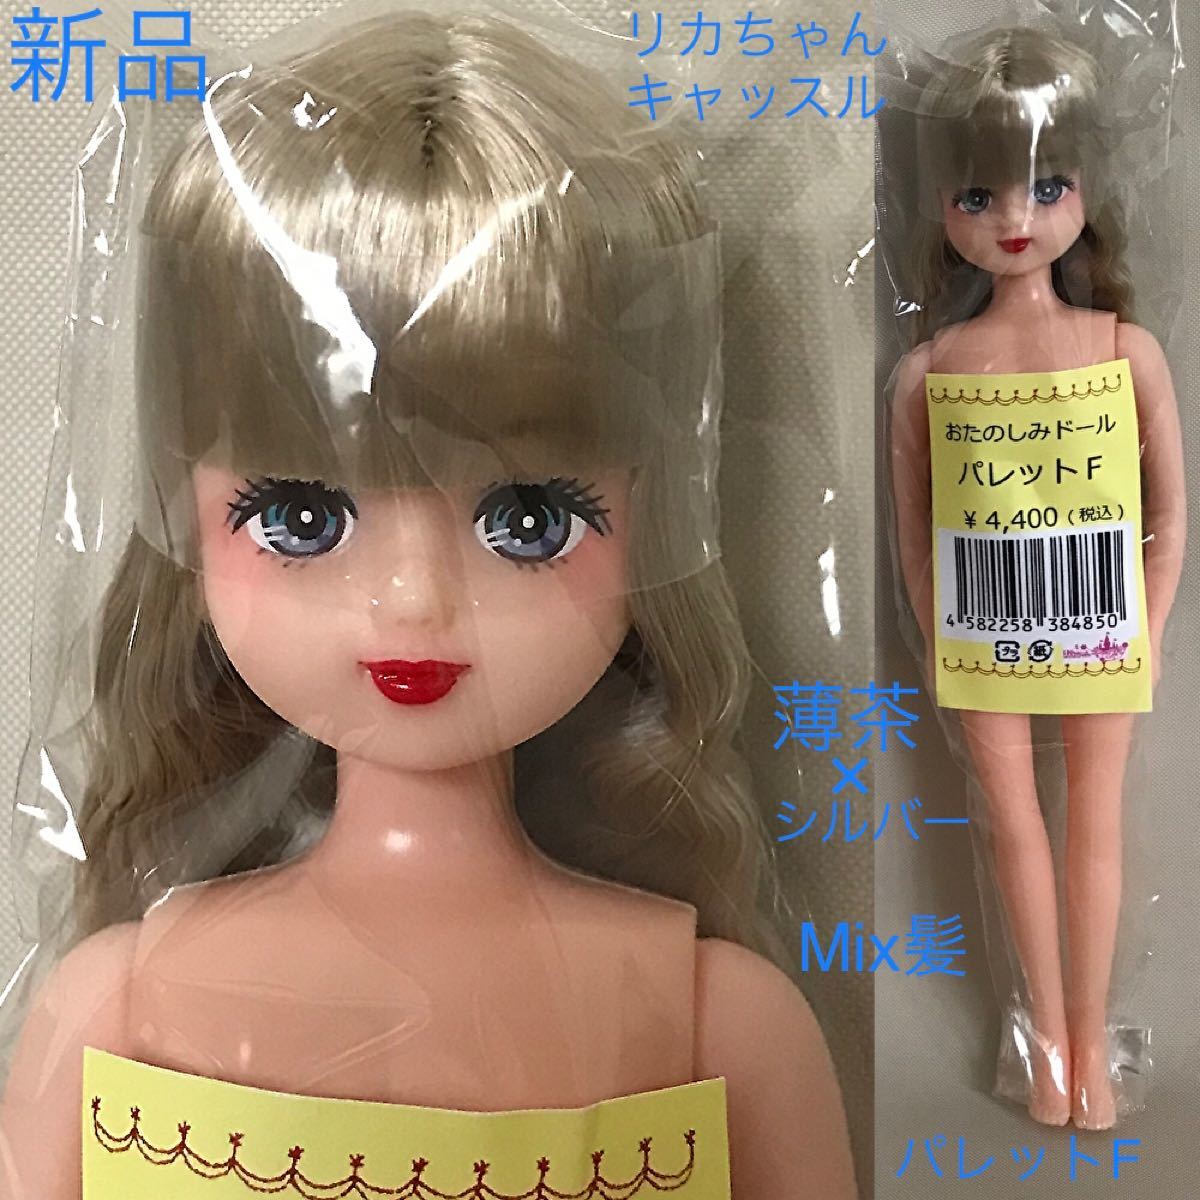 新品【パレットF】ESC Mix髪 薄茶色 おたのしみドール 1/6 リカちゃん リカちゃんキャッスル リトルファクトリー 人形